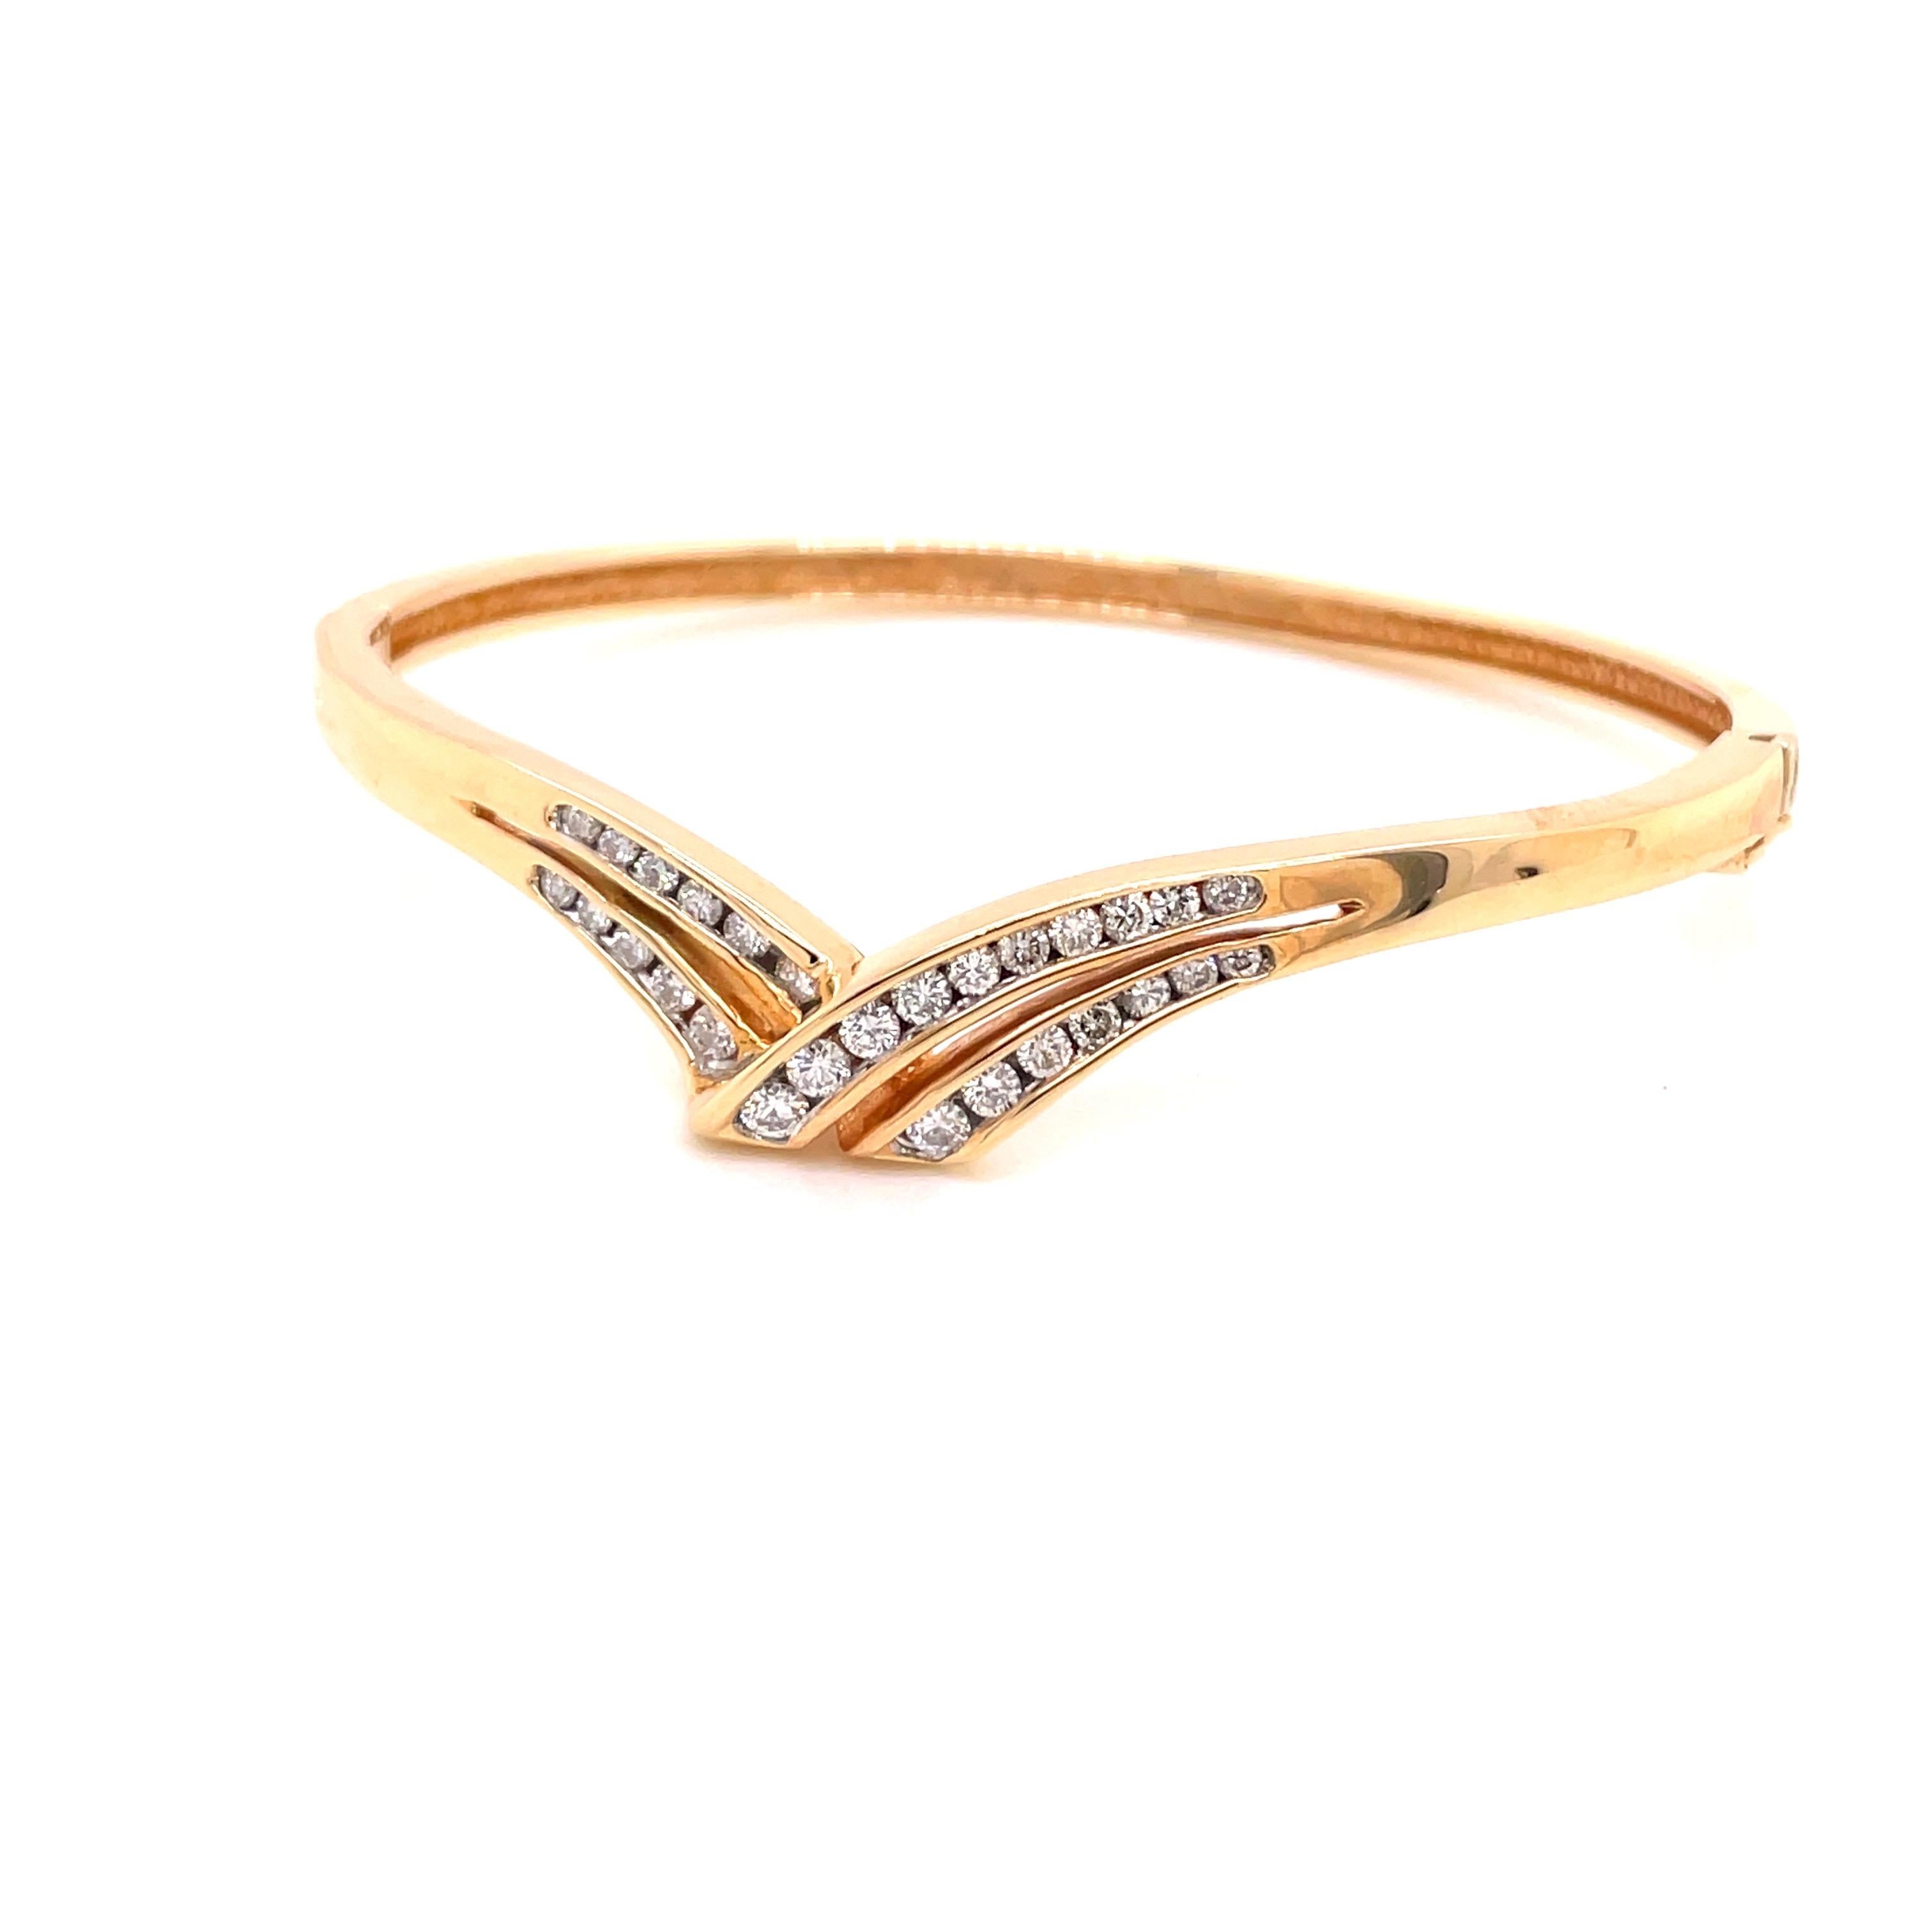 Bracelet en or jaune 14 carats diamant .87ct - Le bracelet est serti de 28 diamants ronds de taille brillant pesant .87ct de couleur G - H et de pureté SI. La largeur du bracelet sur le dessus est de 8 mm et se réduit à 3,3 mm sur le dessous. Le